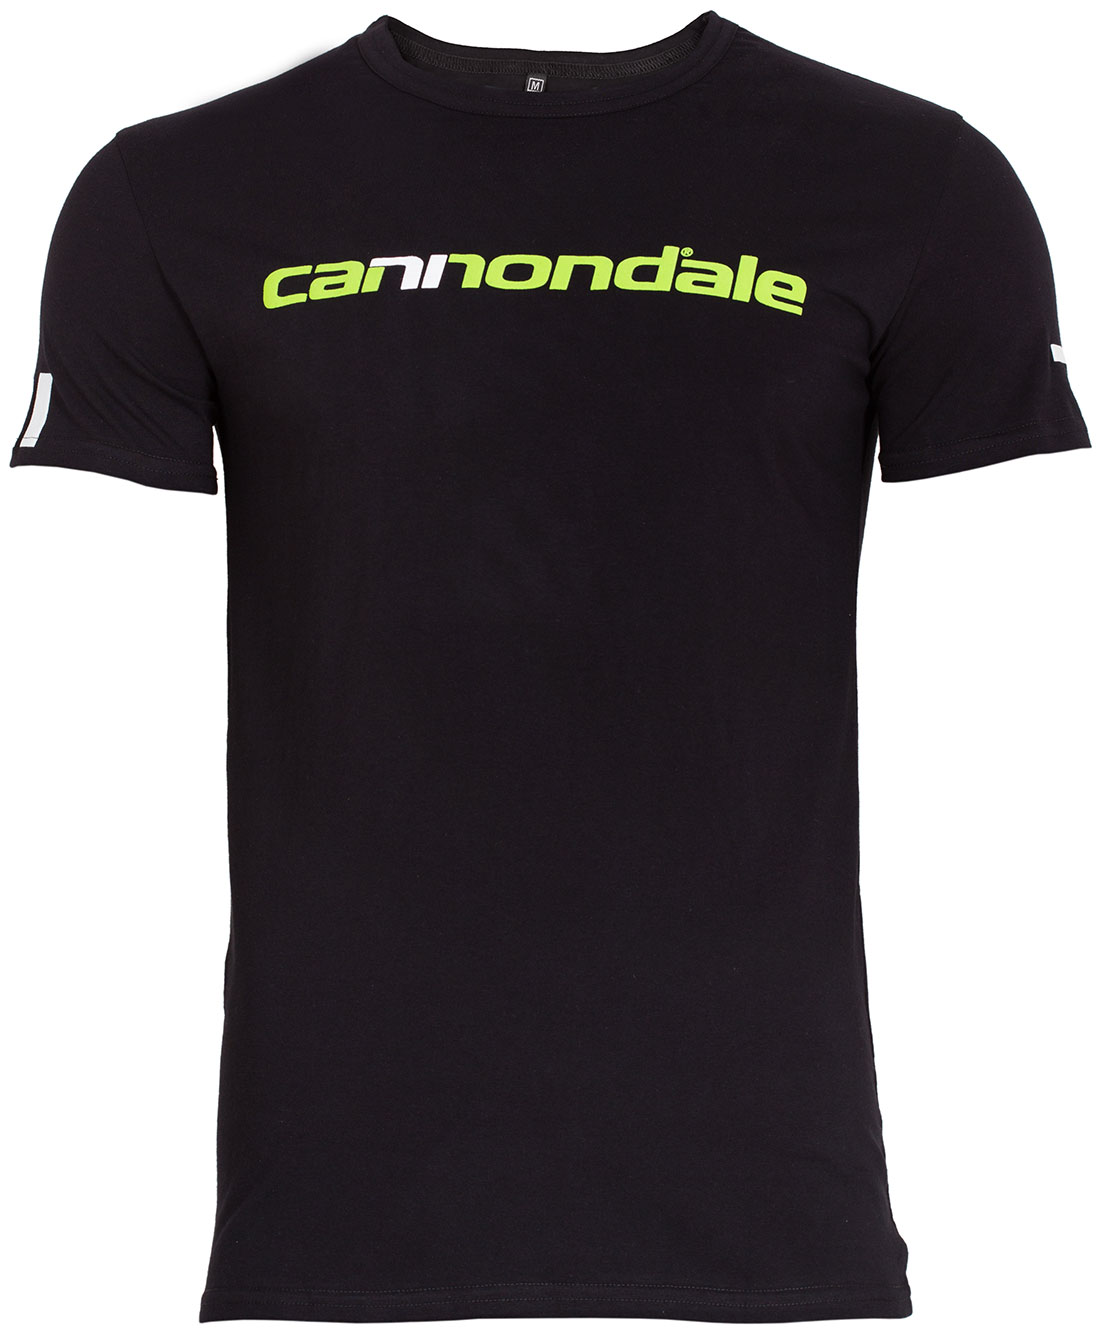 Футболка Cannondale з горизонтальним двоколірним логотипом, чорна, розмір XL